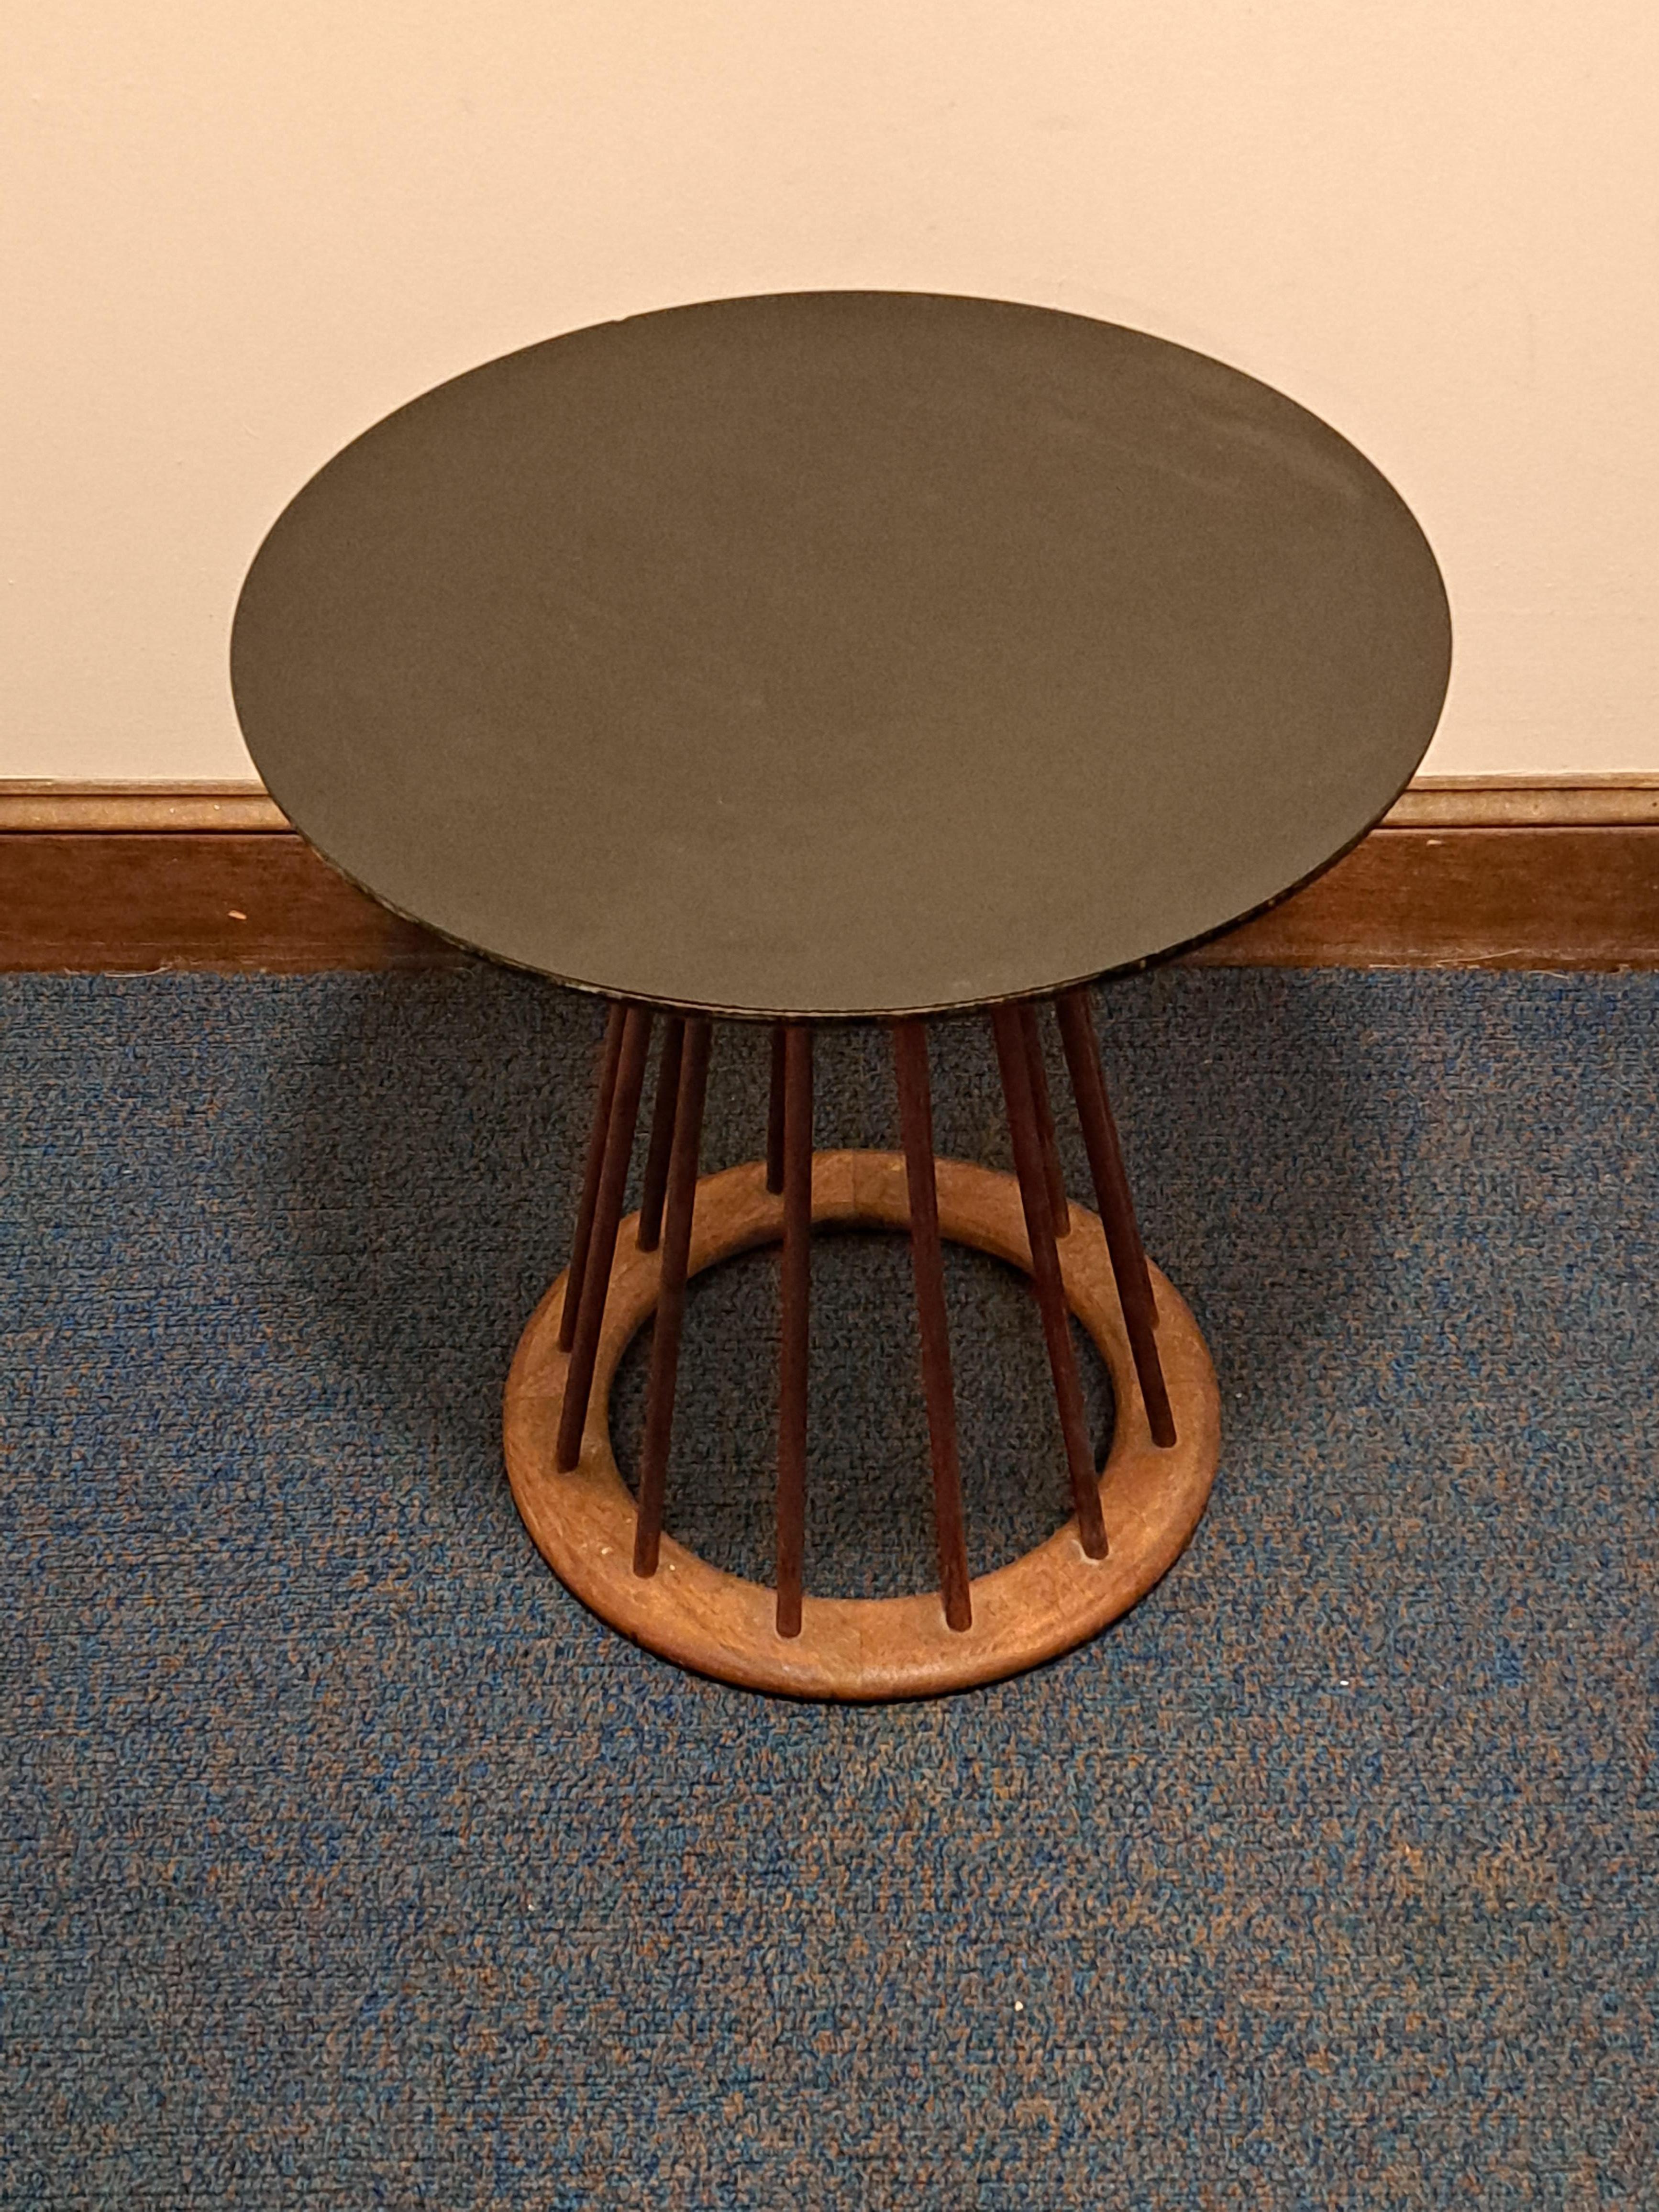 Table d'appoint avec fuseaux et plateau en stratifié noir. La table est conçue par Arthur Umanoff en bois de noyer. La table a une base circulaire avec d'étroits fuseaux en bois qui se rejoignent au niveau du plateau.